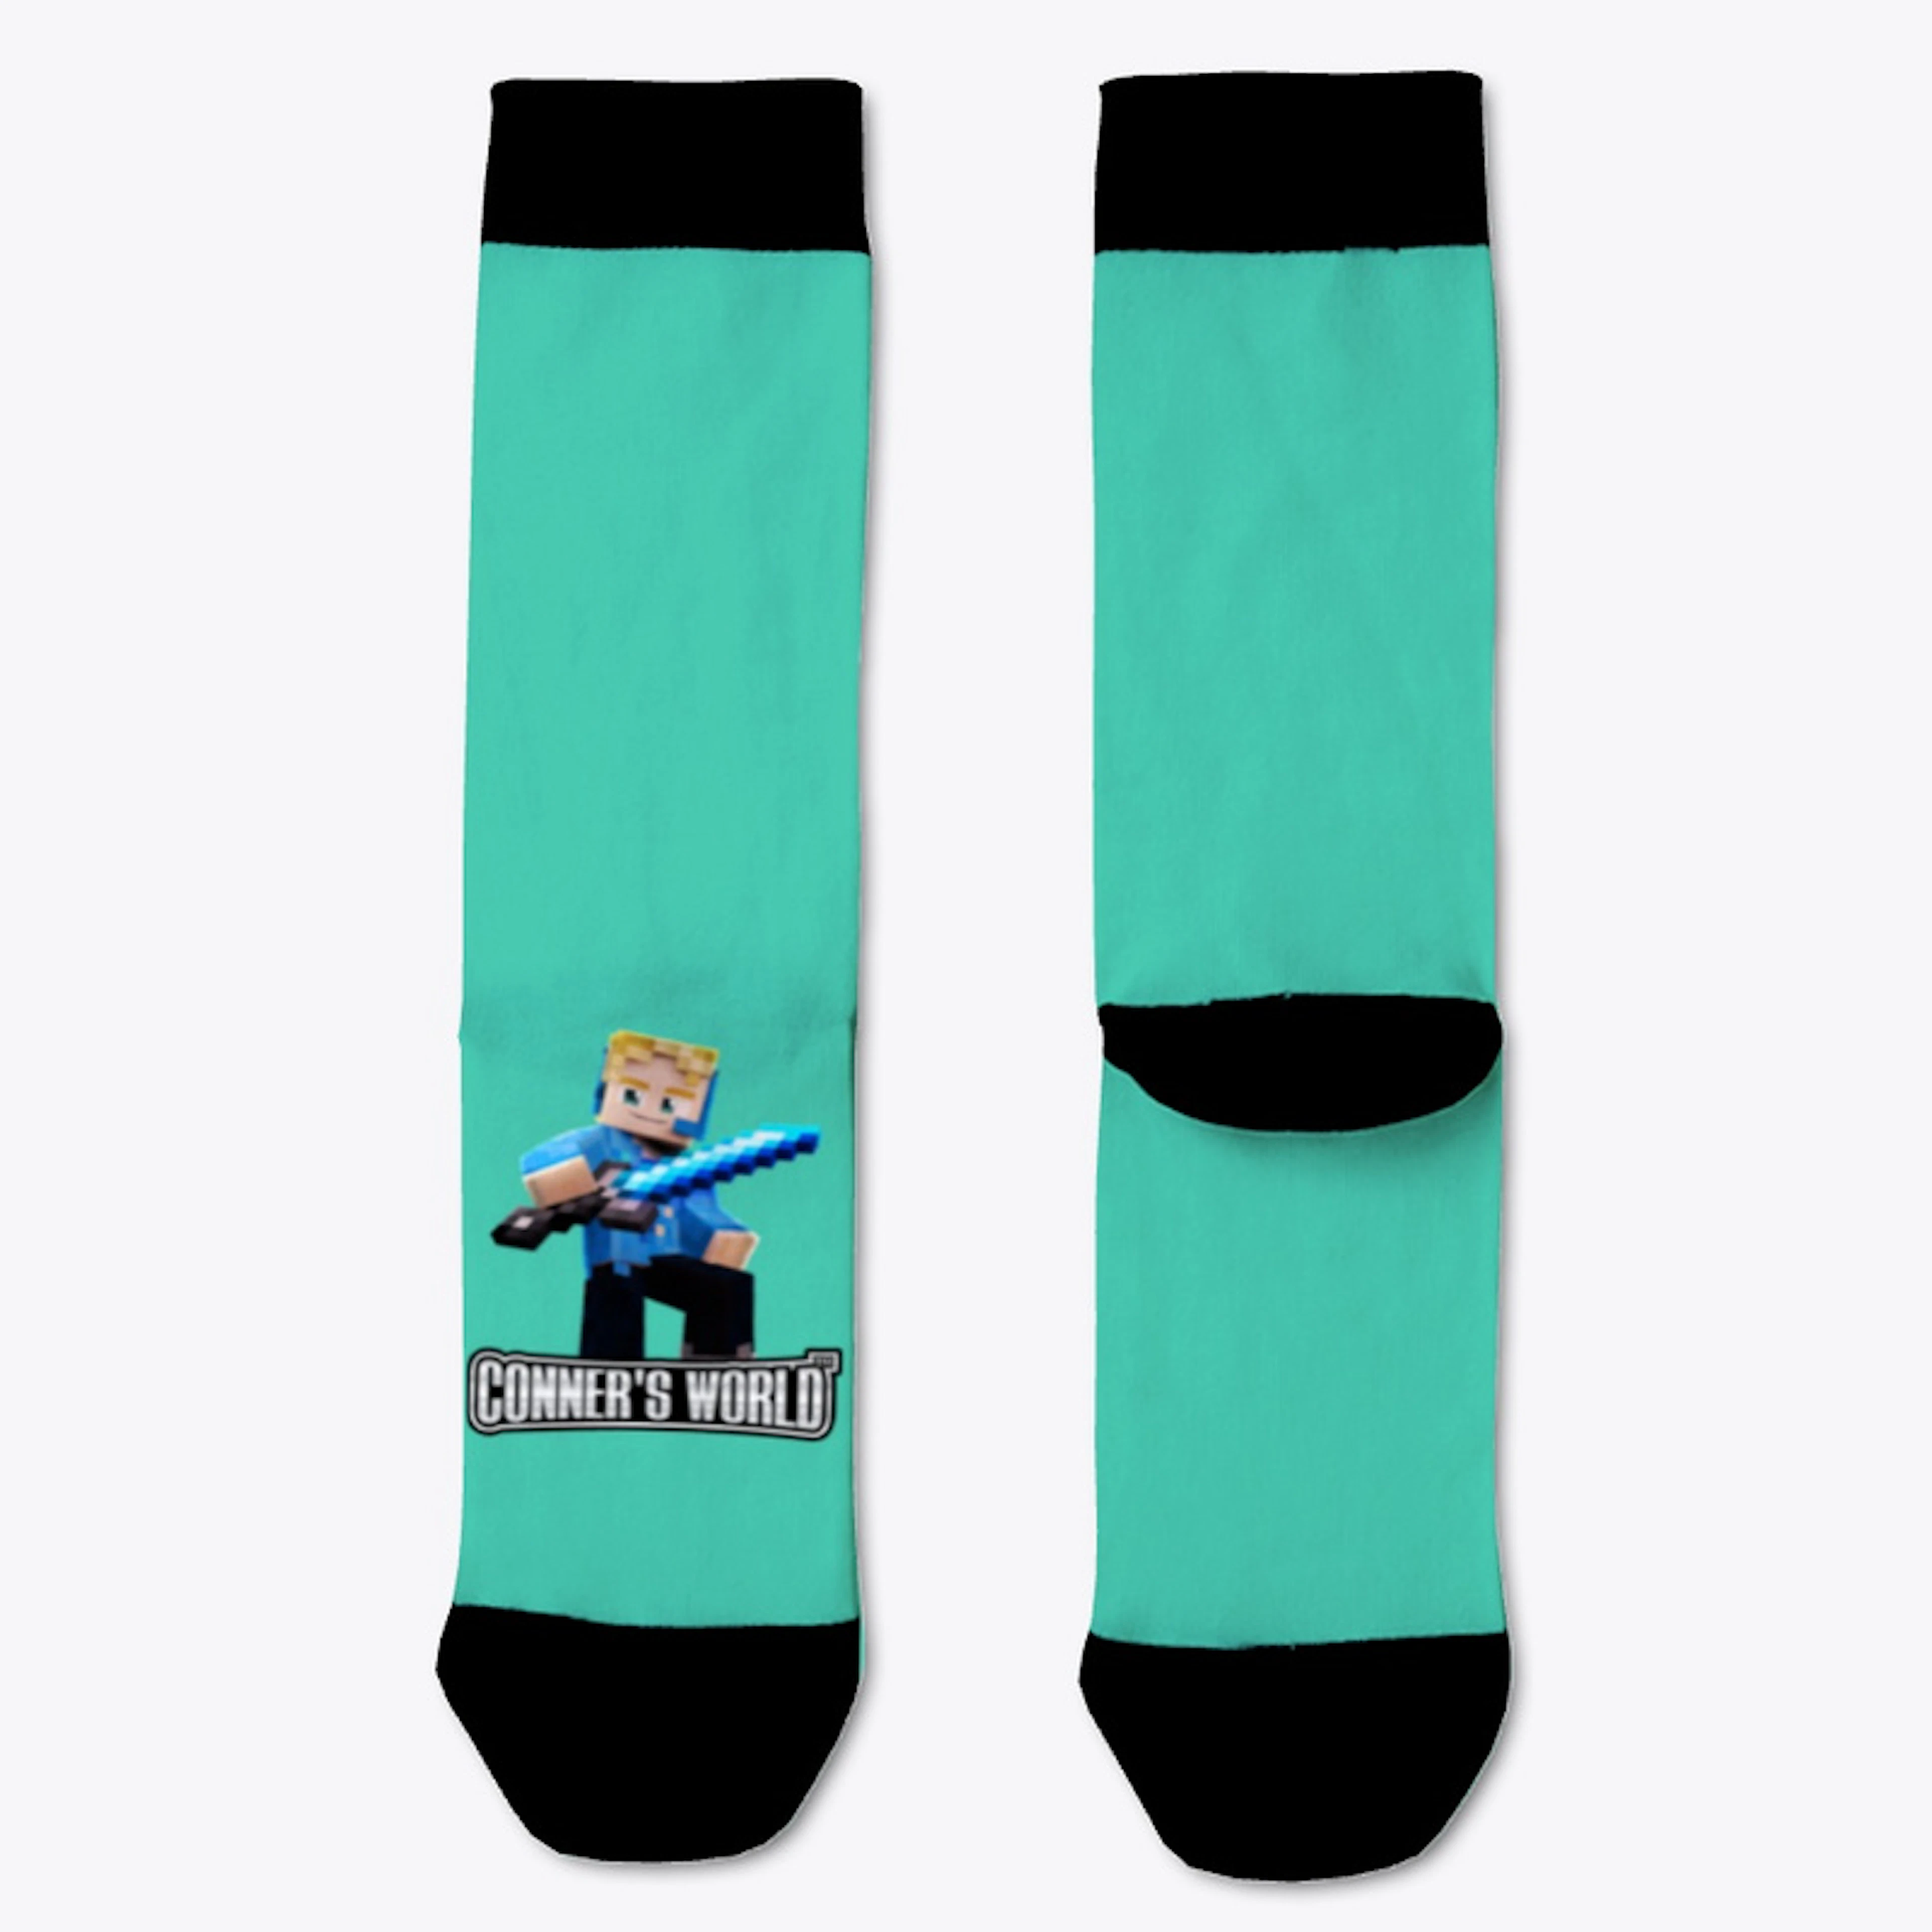 Official Conner's World Socks